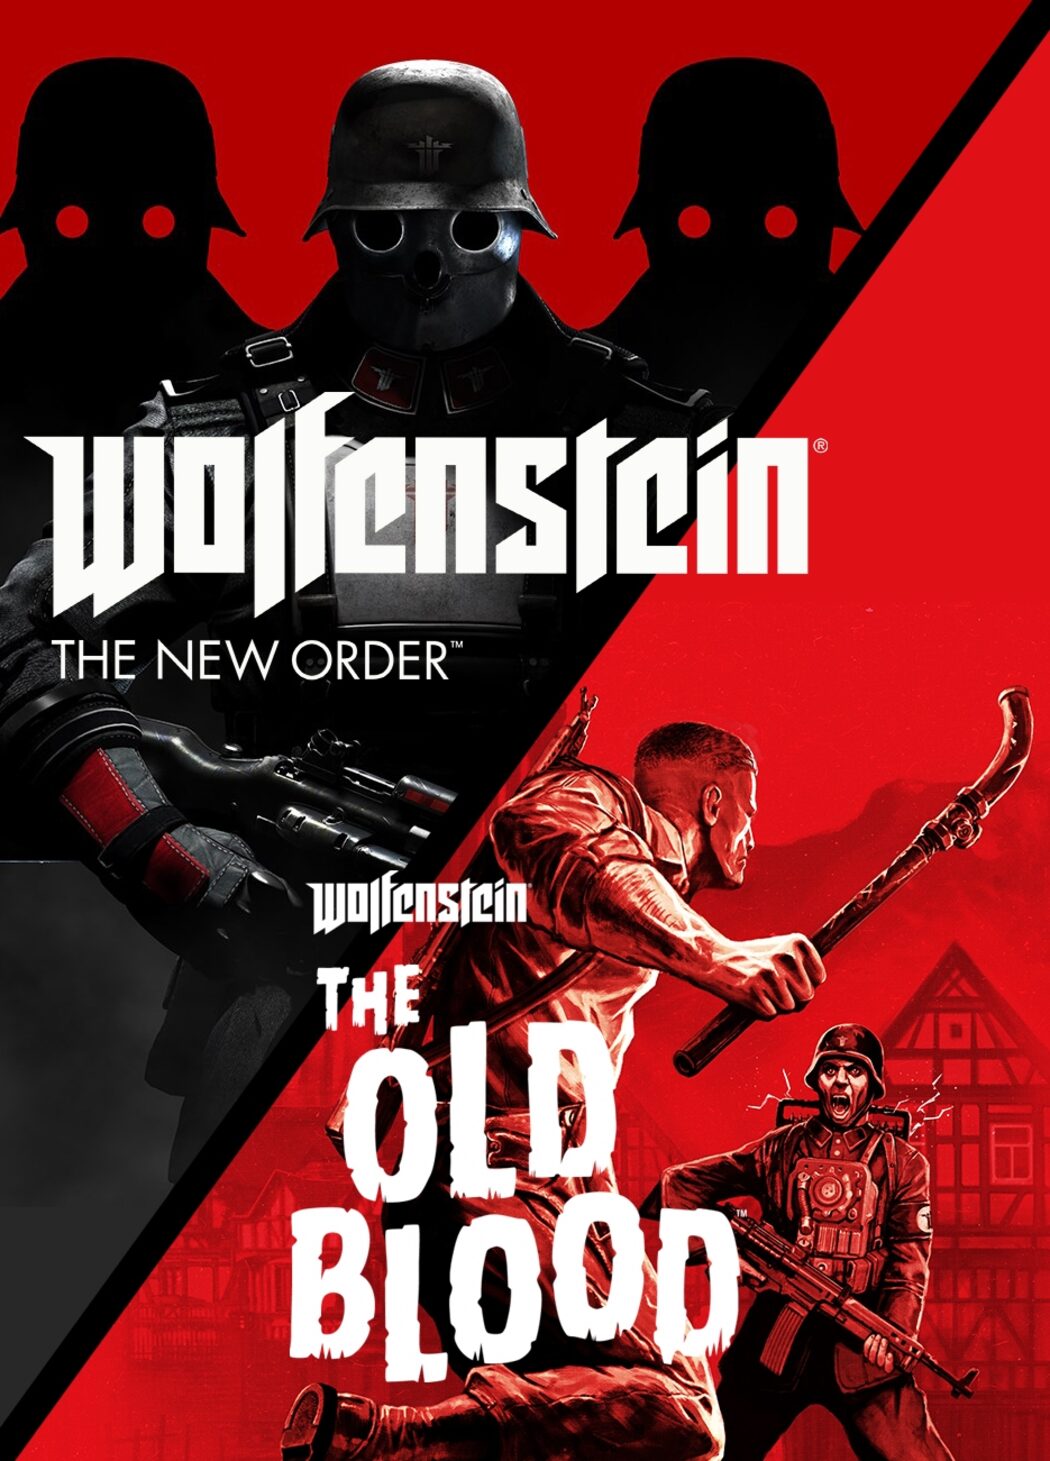 Wolfenstein: The New Order on Steam